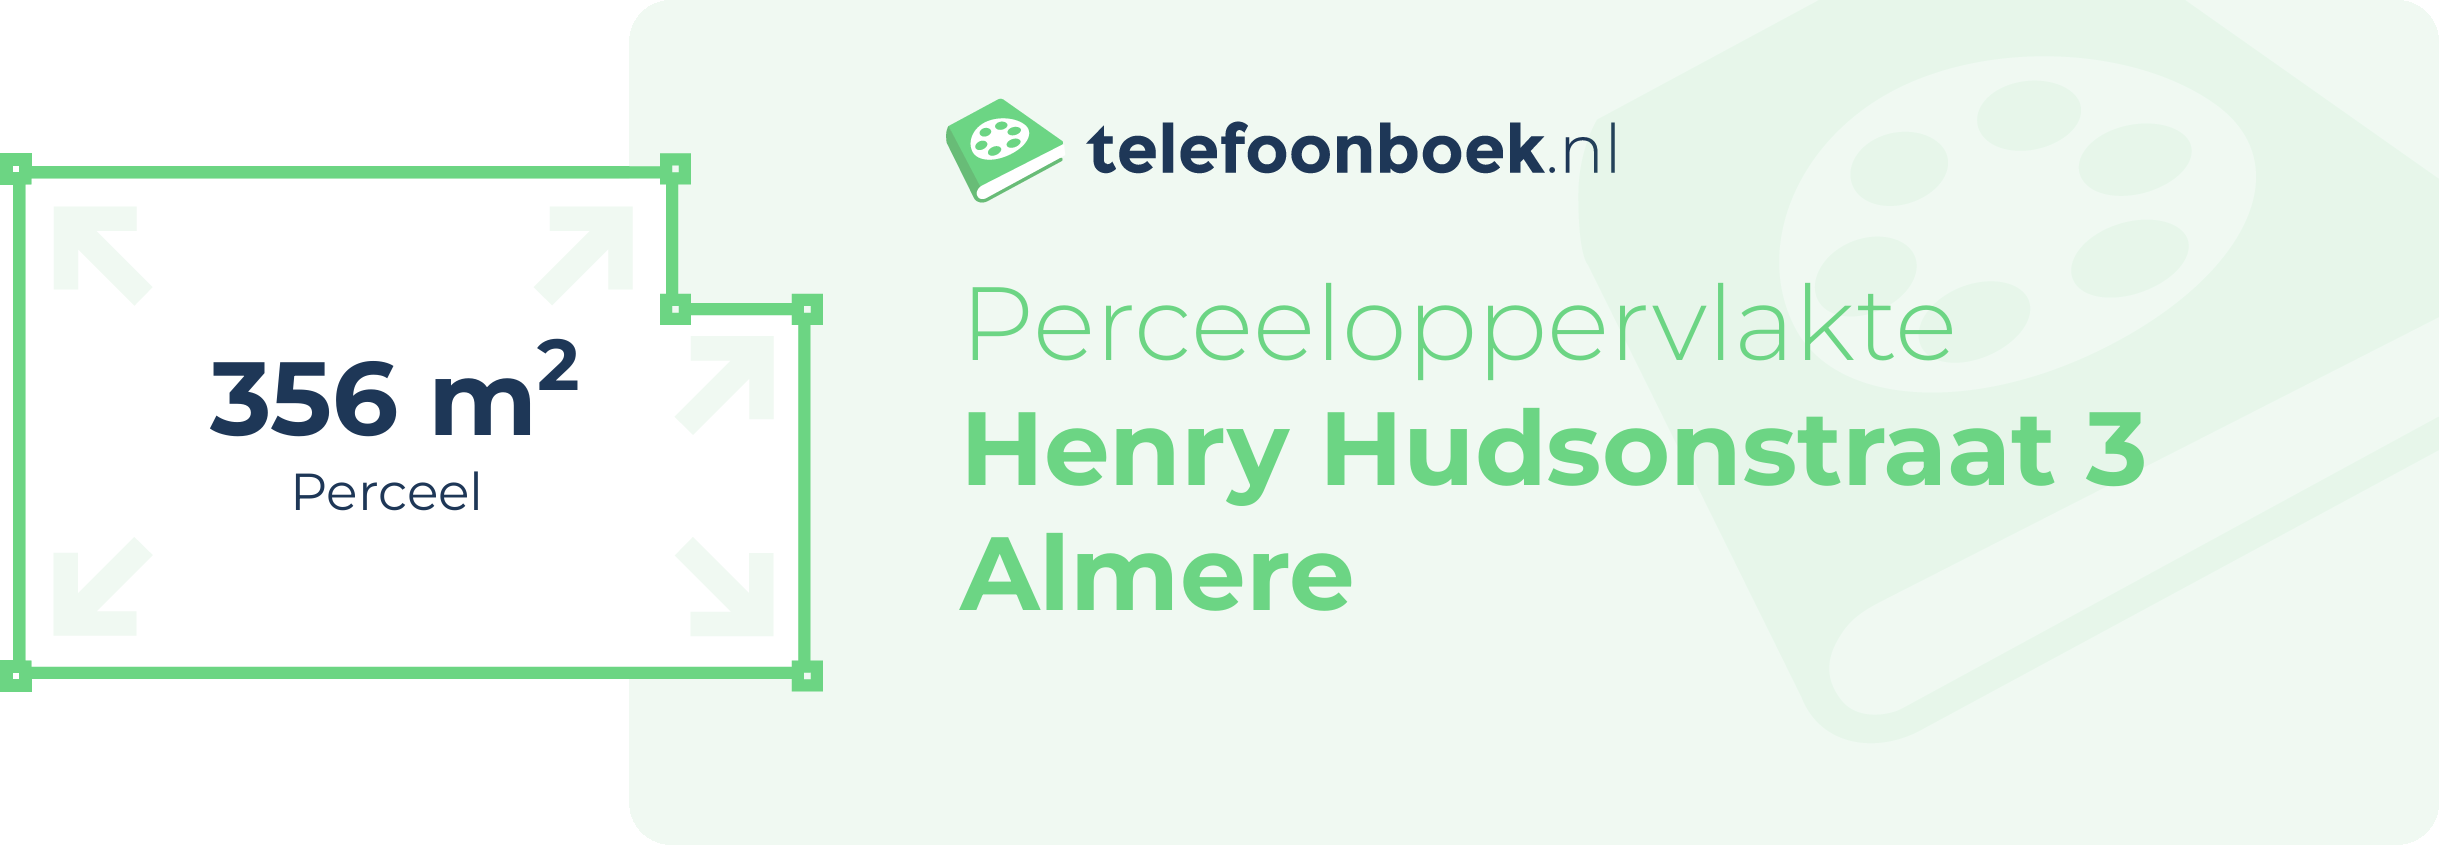 Perceeloppervlakte Henry Hudsonstraat 3 Almere